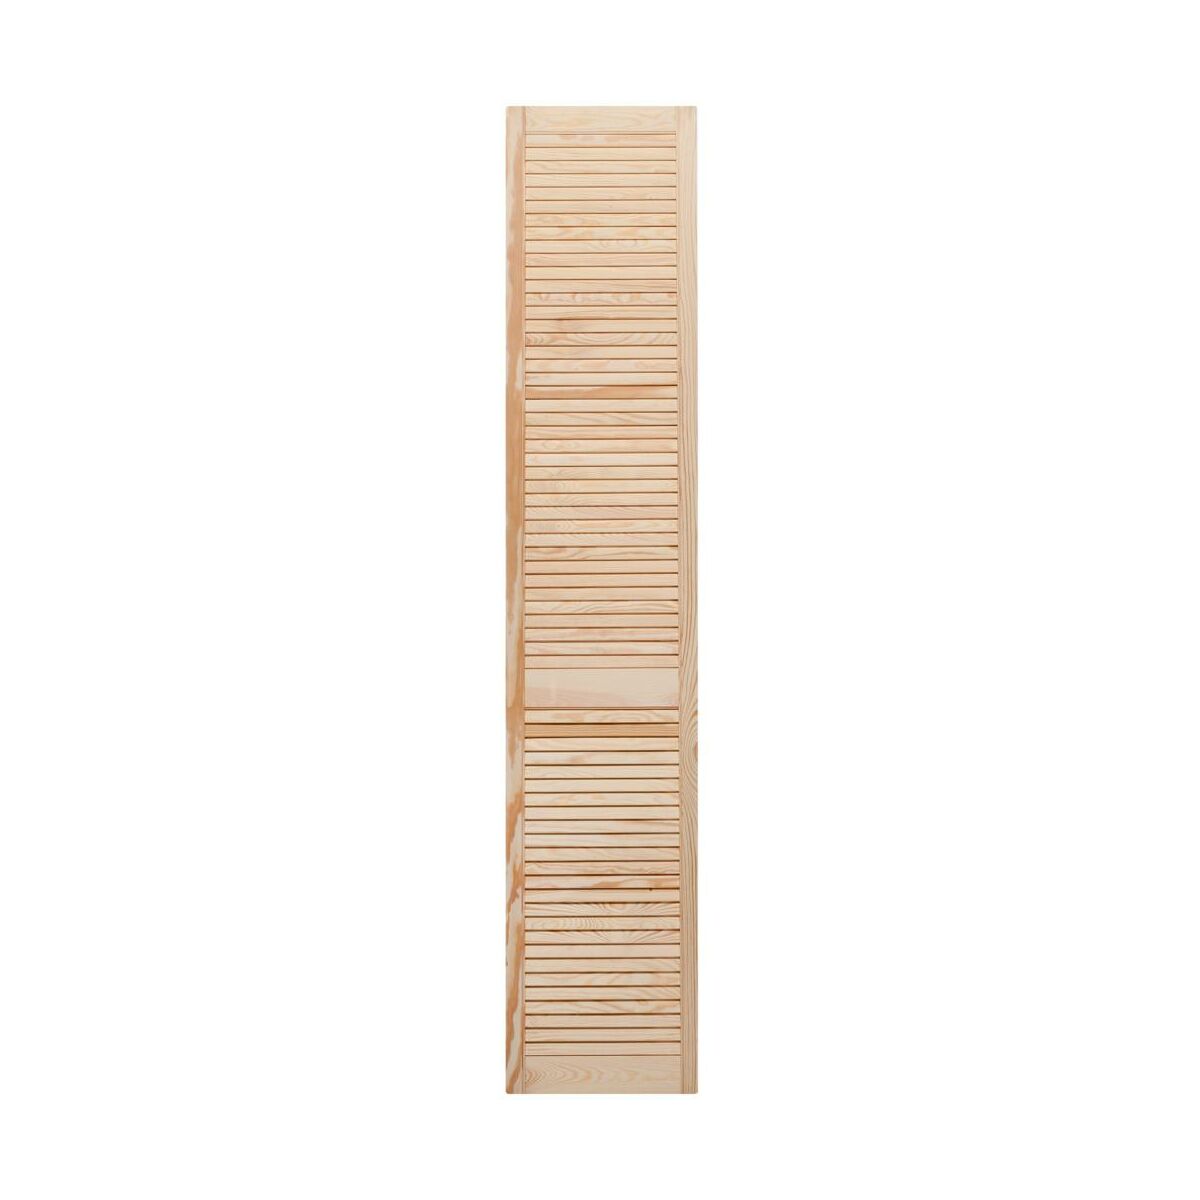 Drzwiczki ażurowe 201.3 x 39.4 cm Floorpol